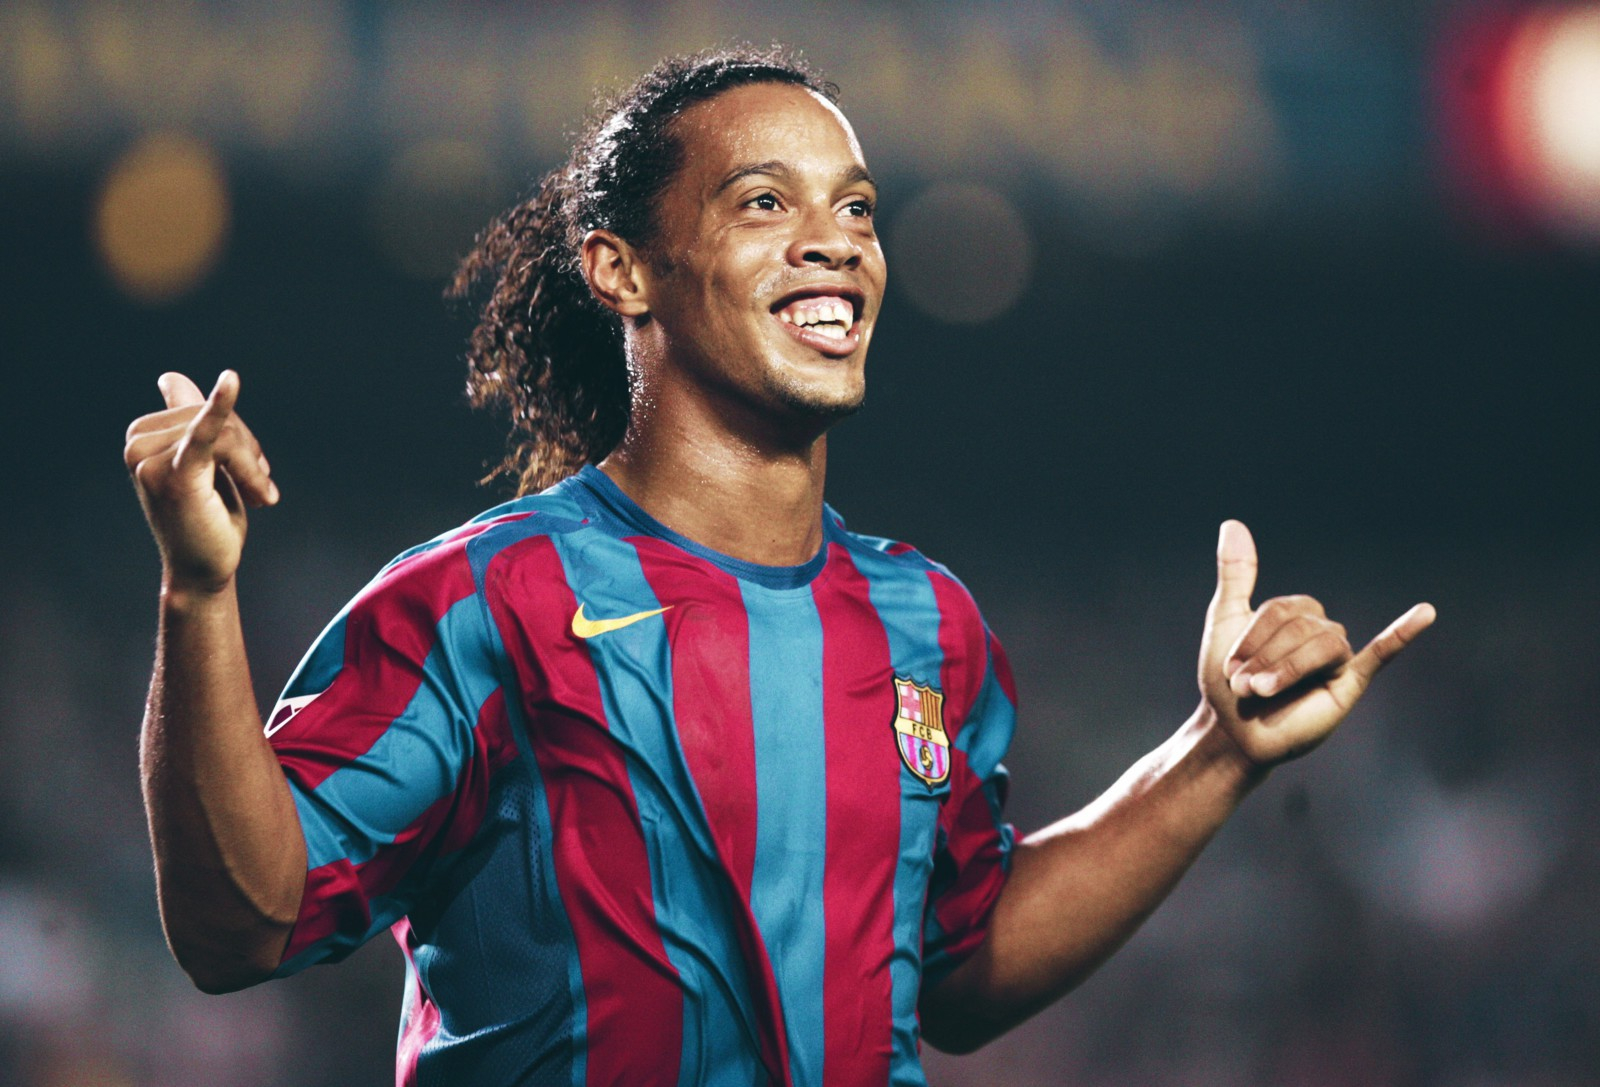 VIDEO: Huyền thoại Ronaldinho vẽ "cầu vồng" tuyệt đẹp ở tuổi 42